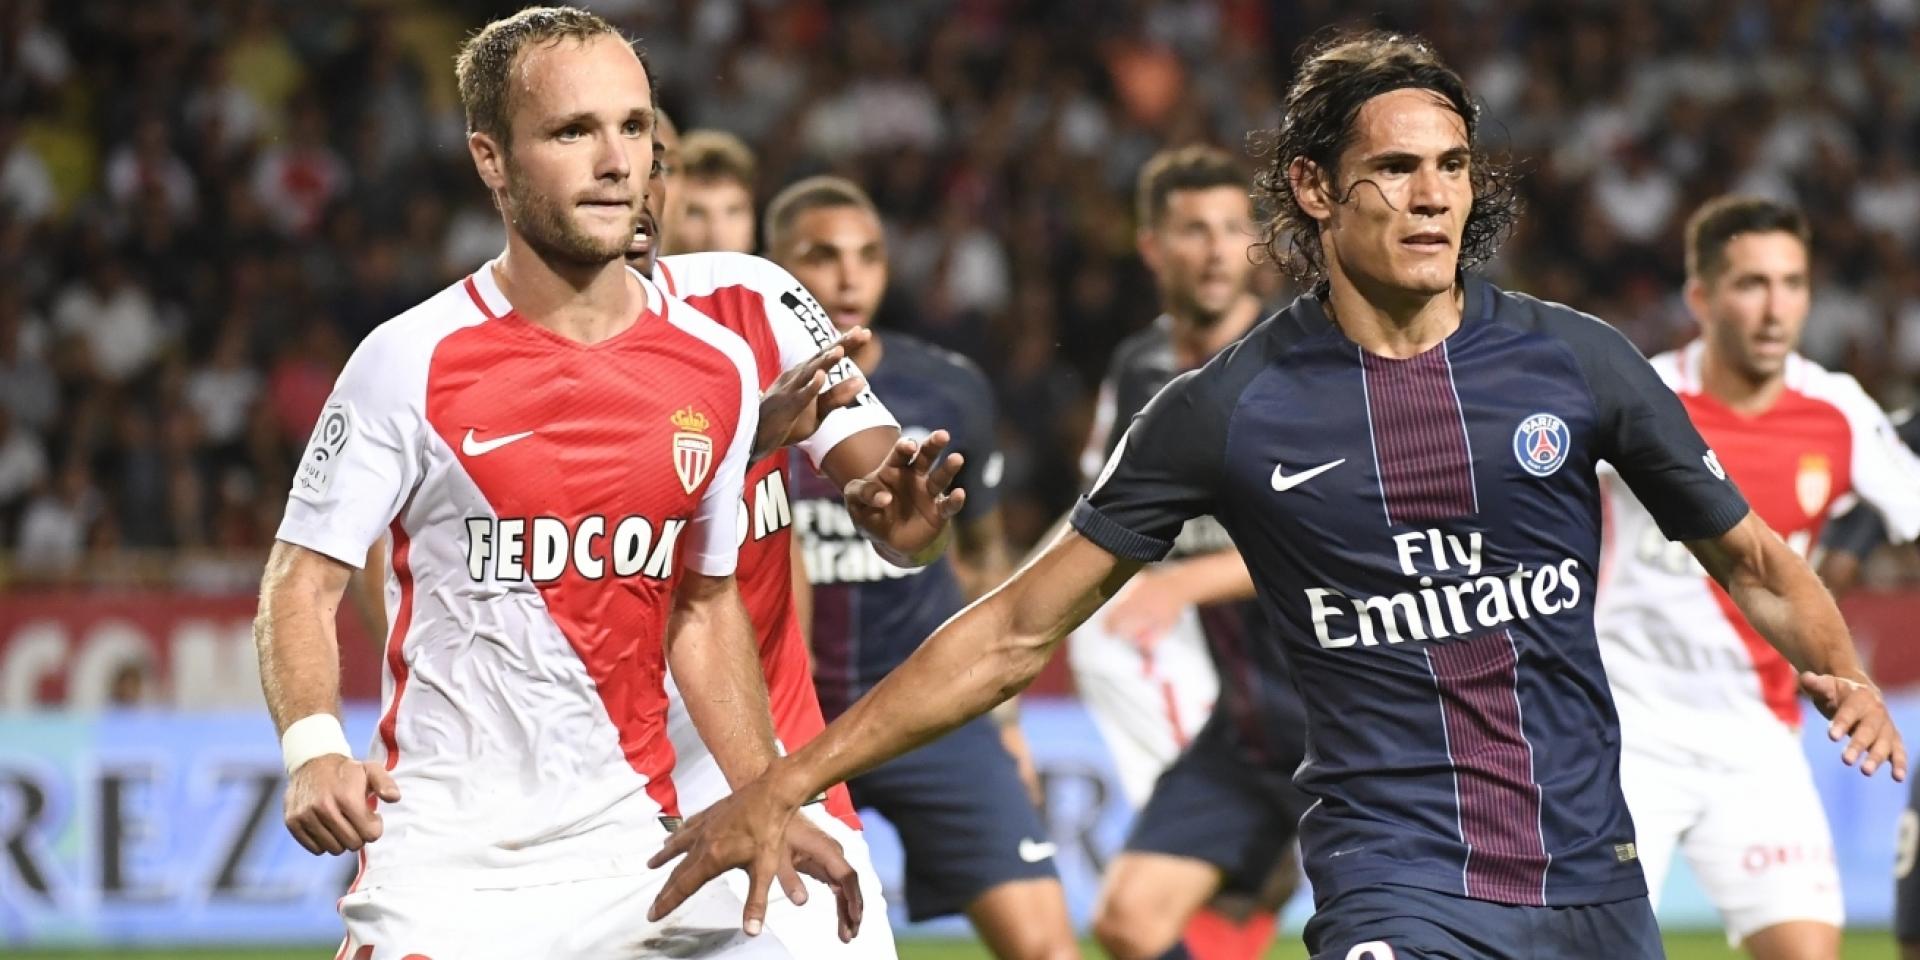 Voir la finale de la Coupe de la Ligue de football en direct sur France 2 : Vidéo streaming match PSG AS Monaco, résultat et replay buts